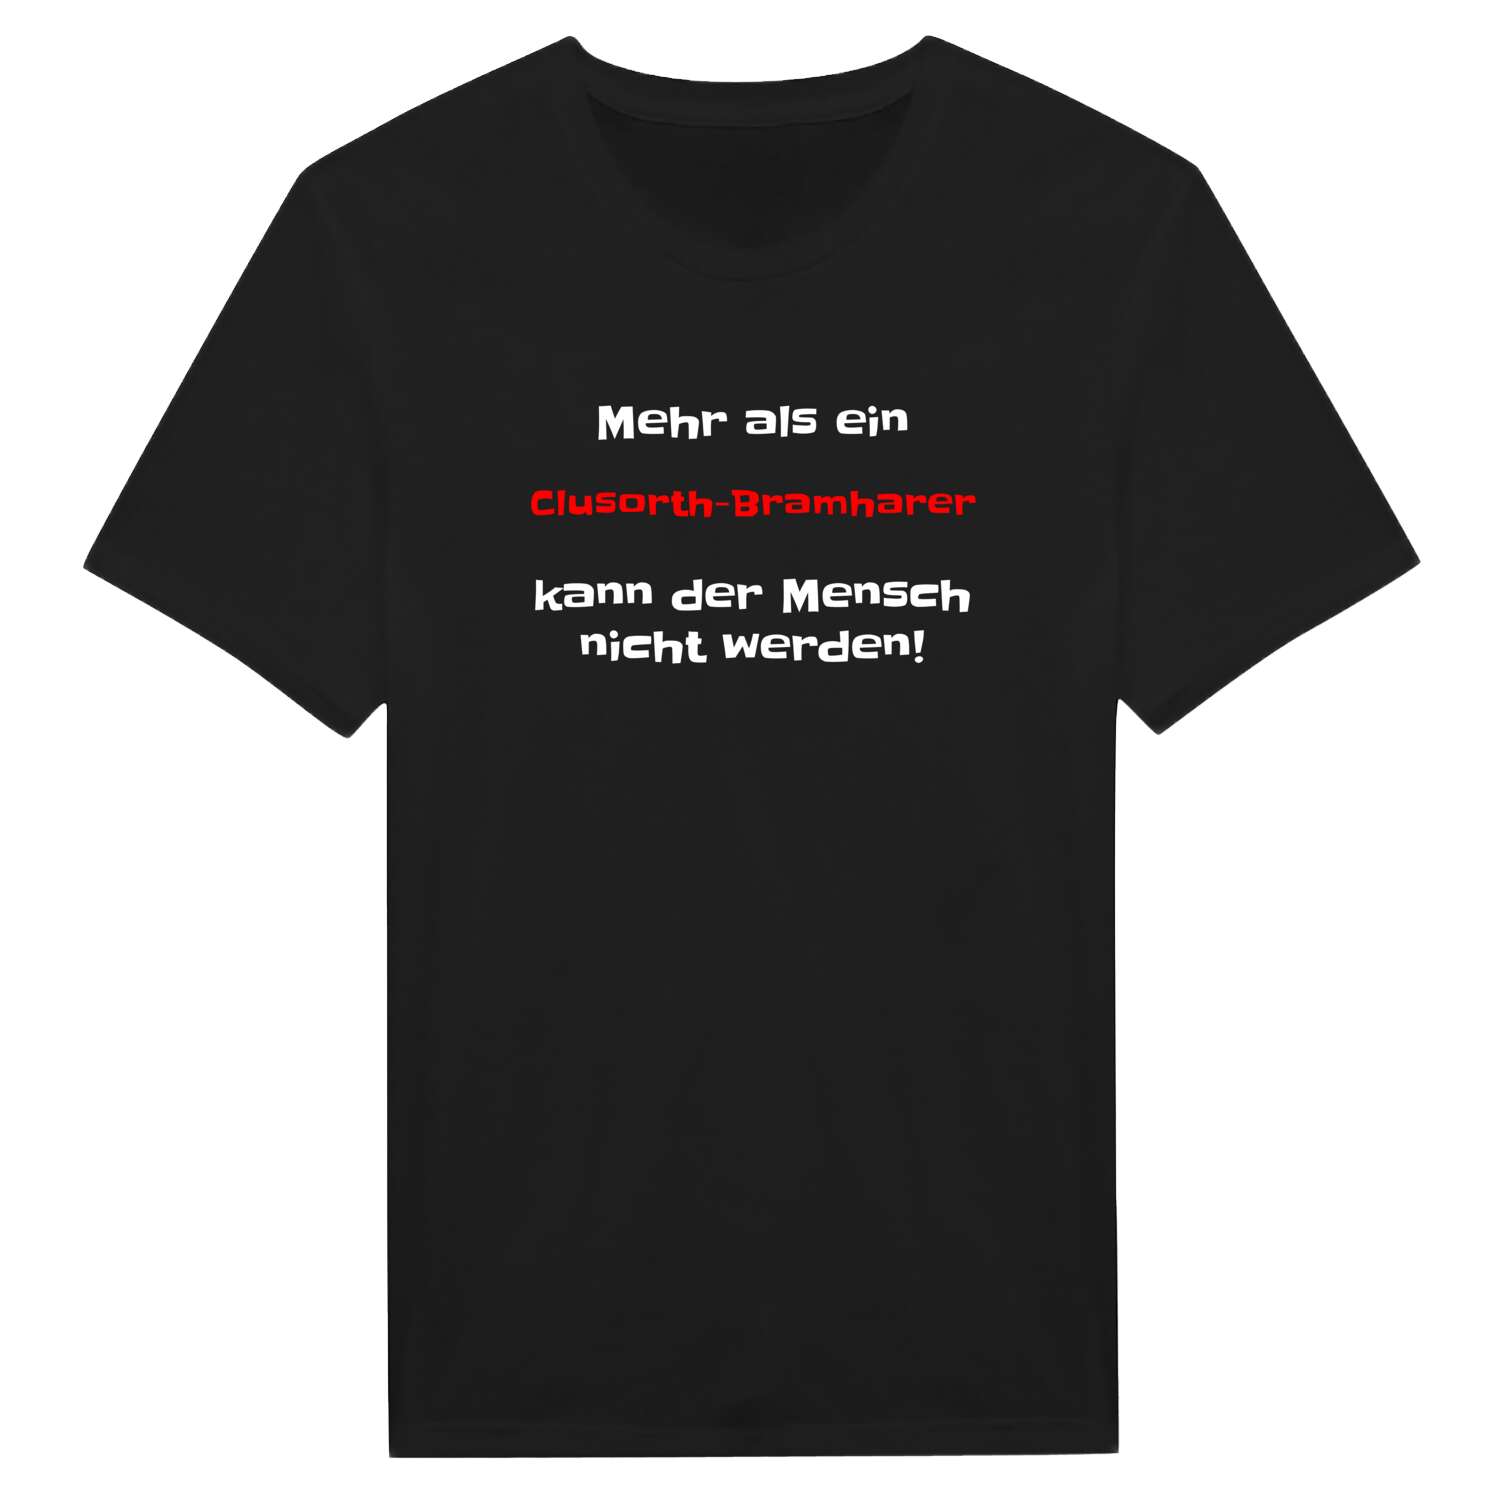 Clusorth-Bramhar T-Shirt »Mehr als ein«